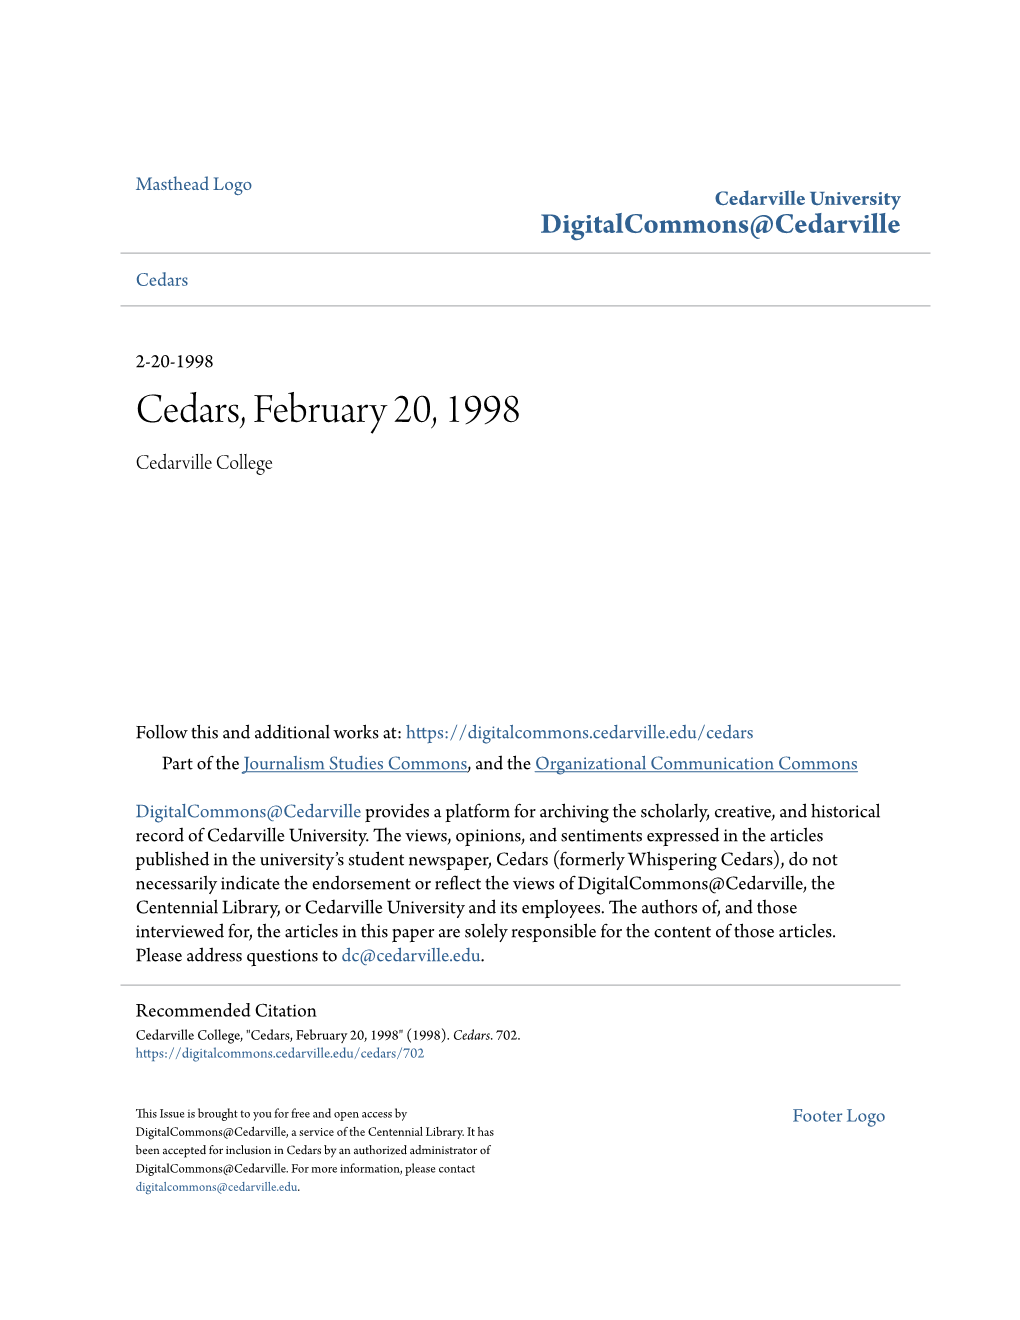 Cedars, February 20, 1998 Cedarville College